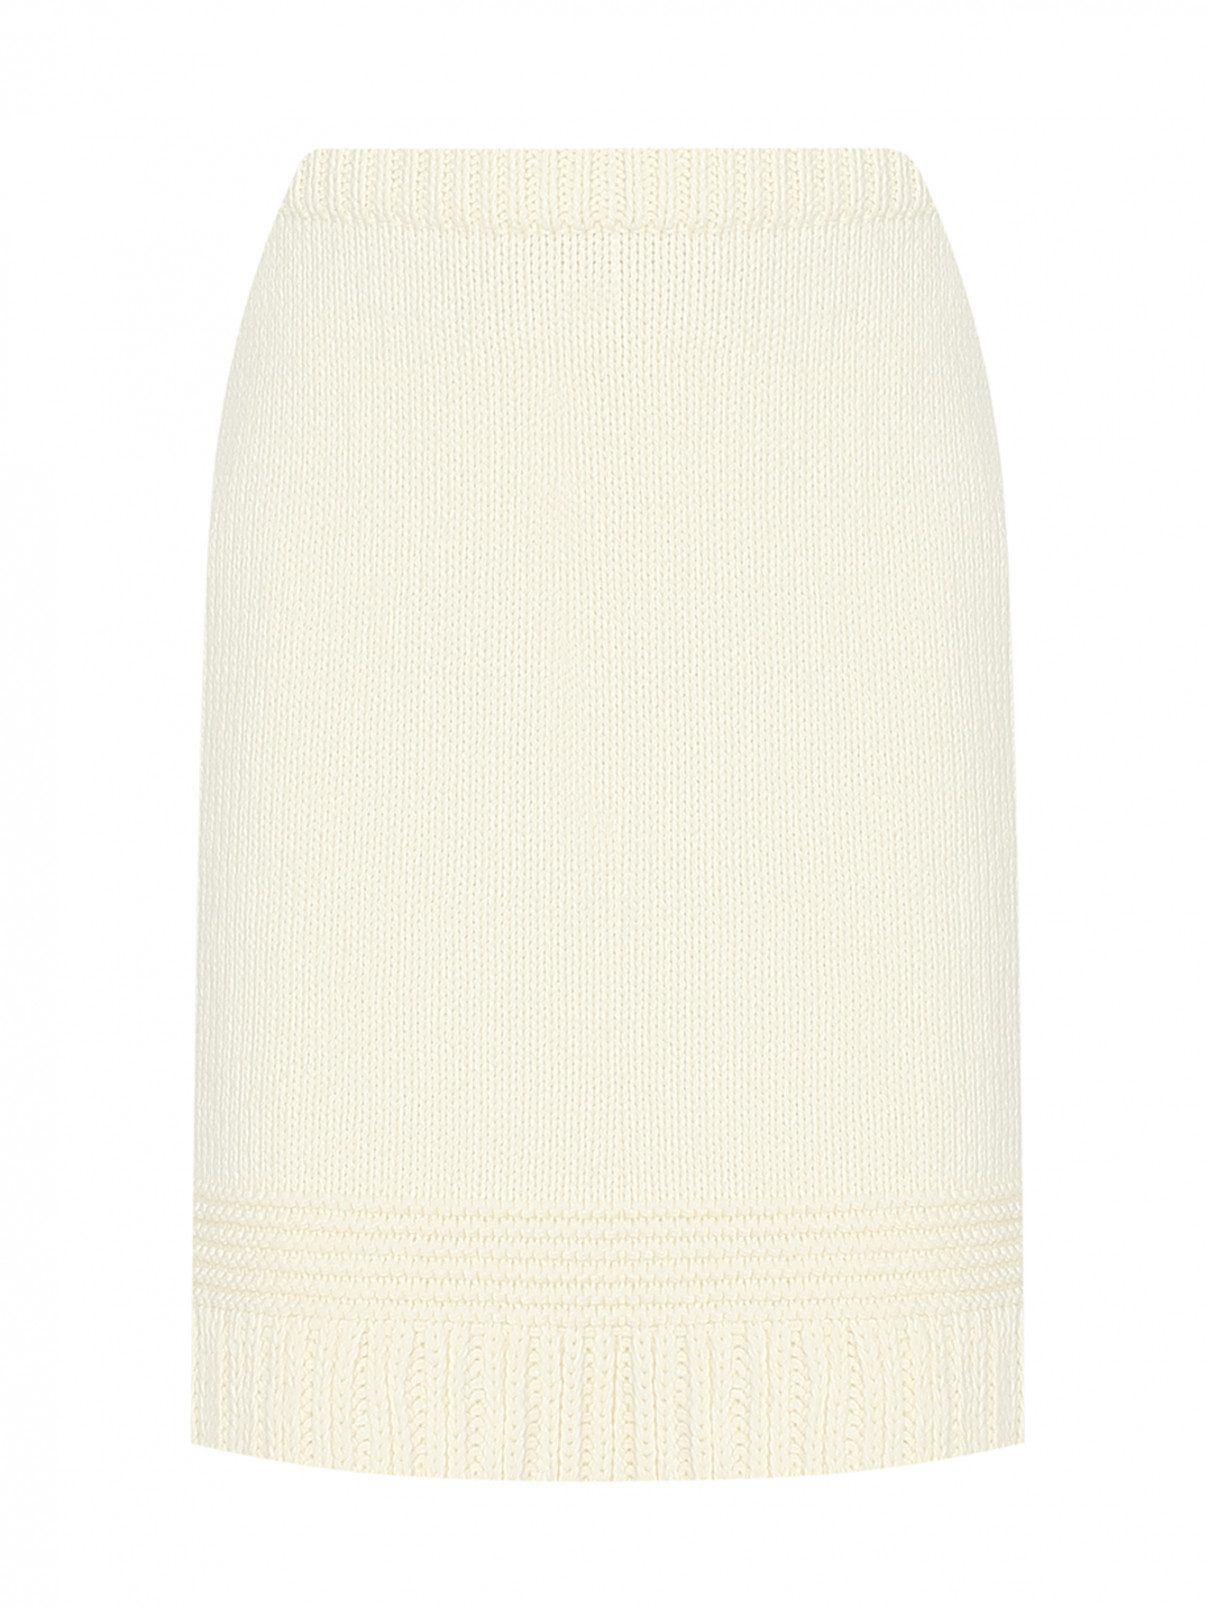 Вязаная юбка из шерсти на резинке Luisa Spagnoli  –  Общий вид  – Цвет:  Белый